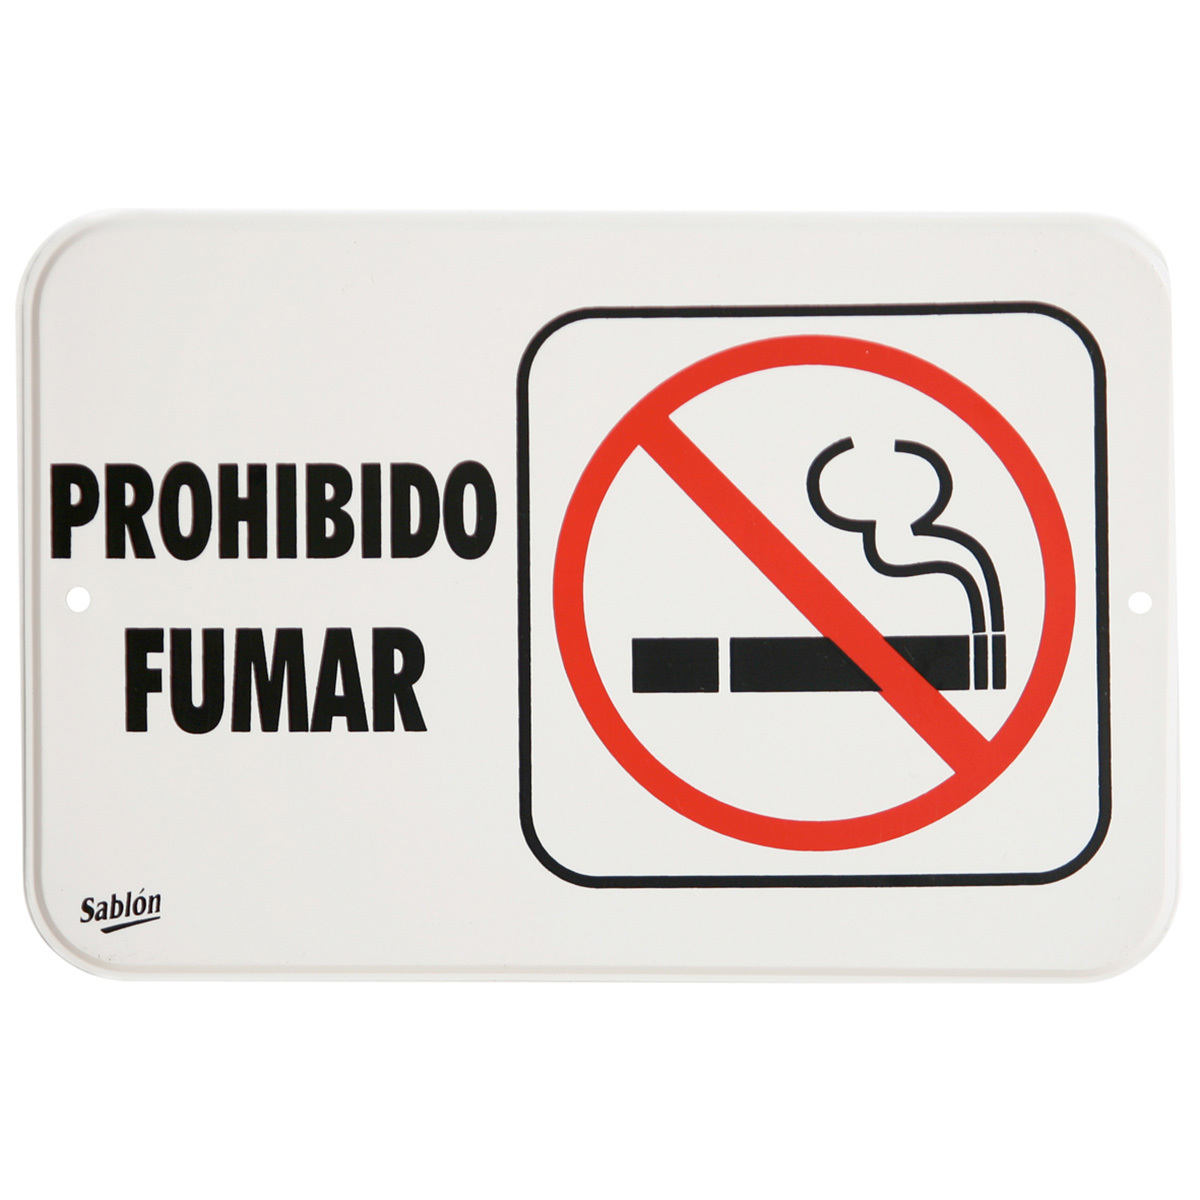 LETRERO PROHIBIDO FUMAR